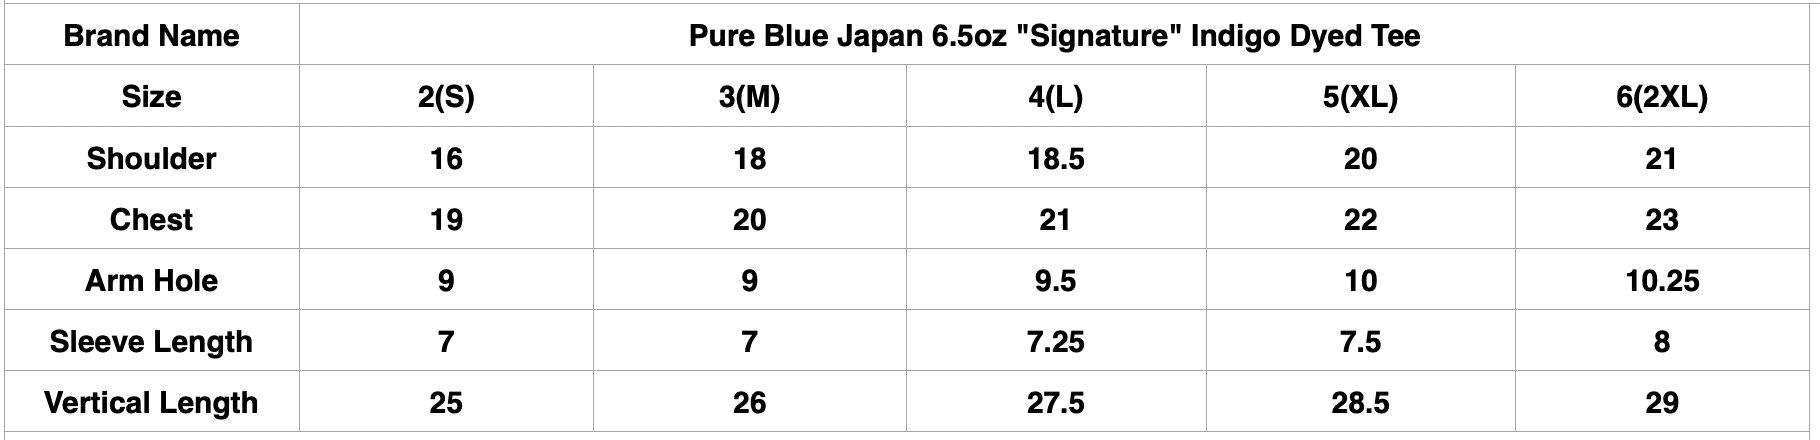 Pure Blue Japan 6.5oz "Signature" Indigo Dyed Tee (Black X Indigo)